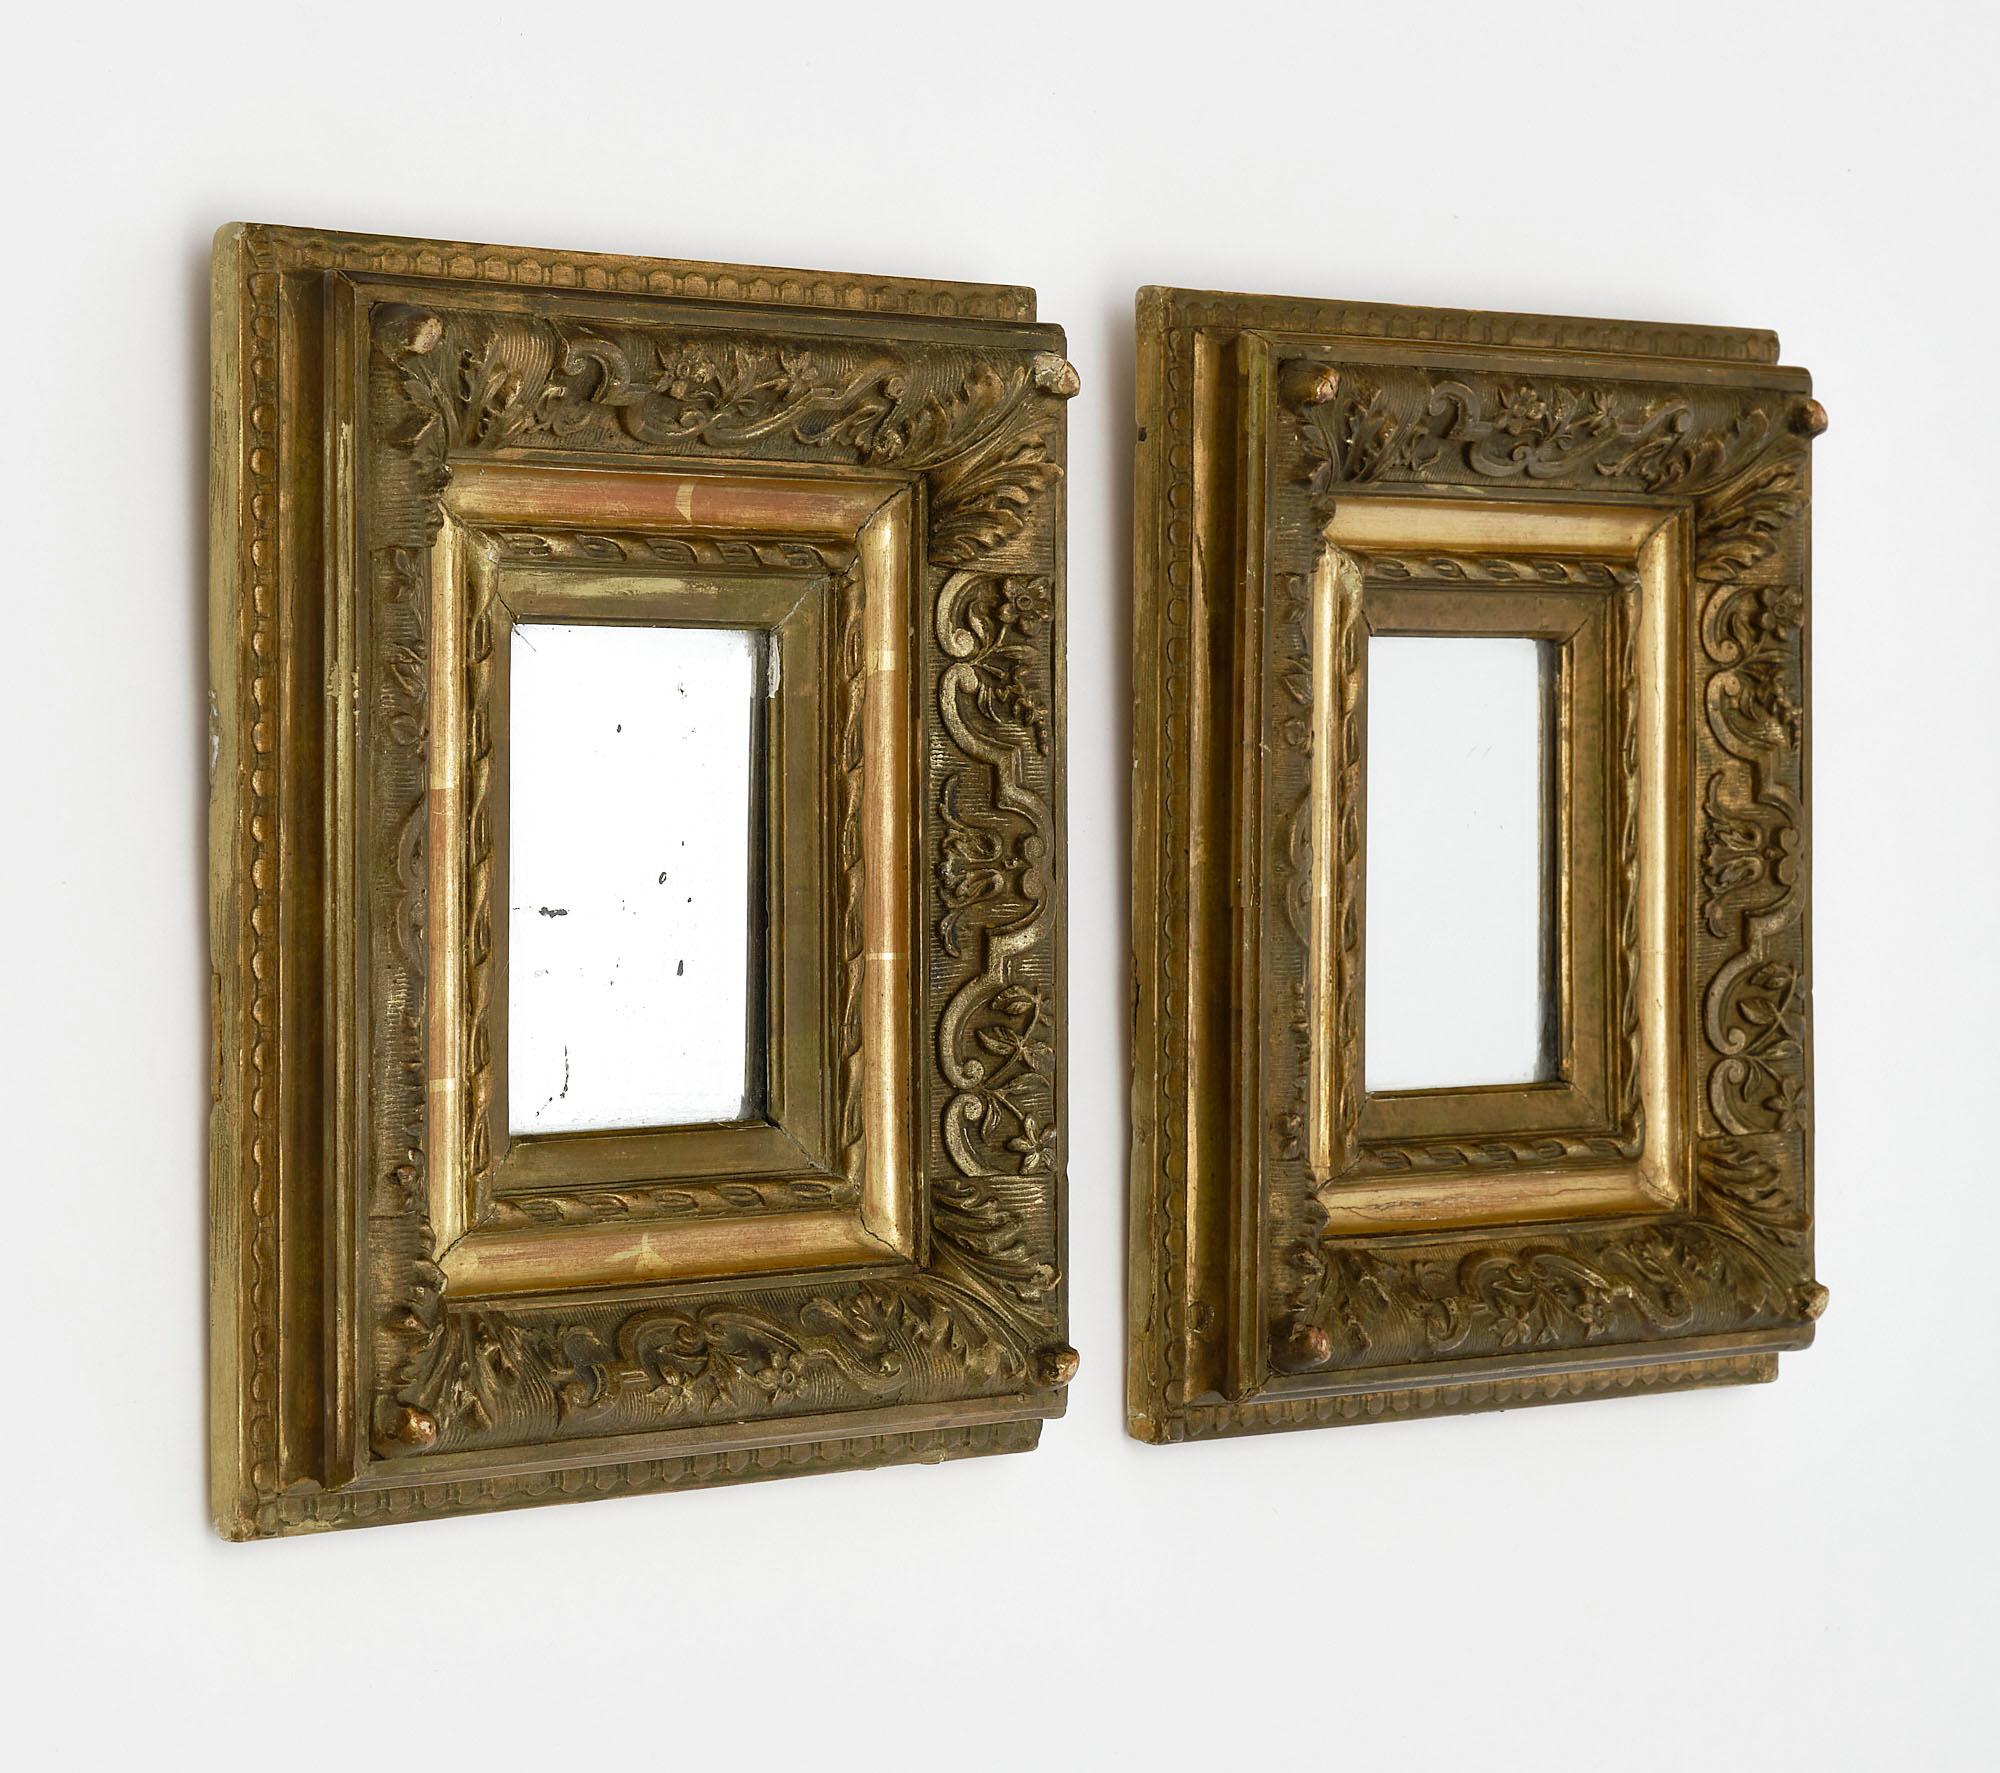 Paire de miroirs de France avec cadres en bois sculptés à la main et feuilles d'or d'origine de 23 carats. Les miroirs intérieurs au mercure et la belle patine sont tous d'origine. Les miroirs sont également biseautés. Nous aimons la taille délicate